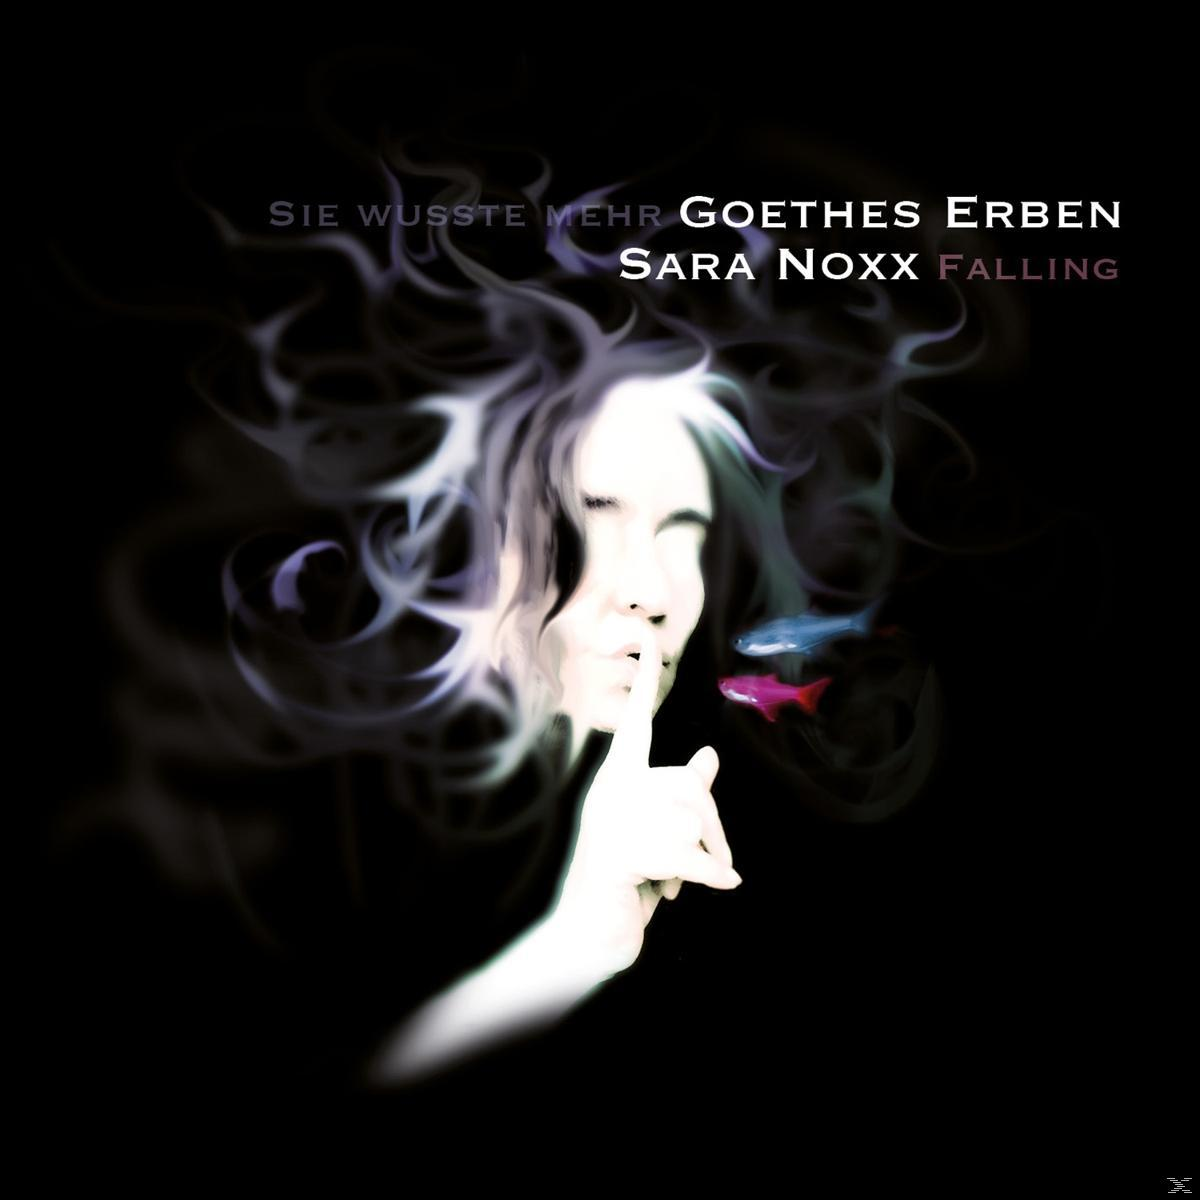 Sara Noxx, Goethes Erben - (Vinyl) - Falling Mehr Wusste - Sie